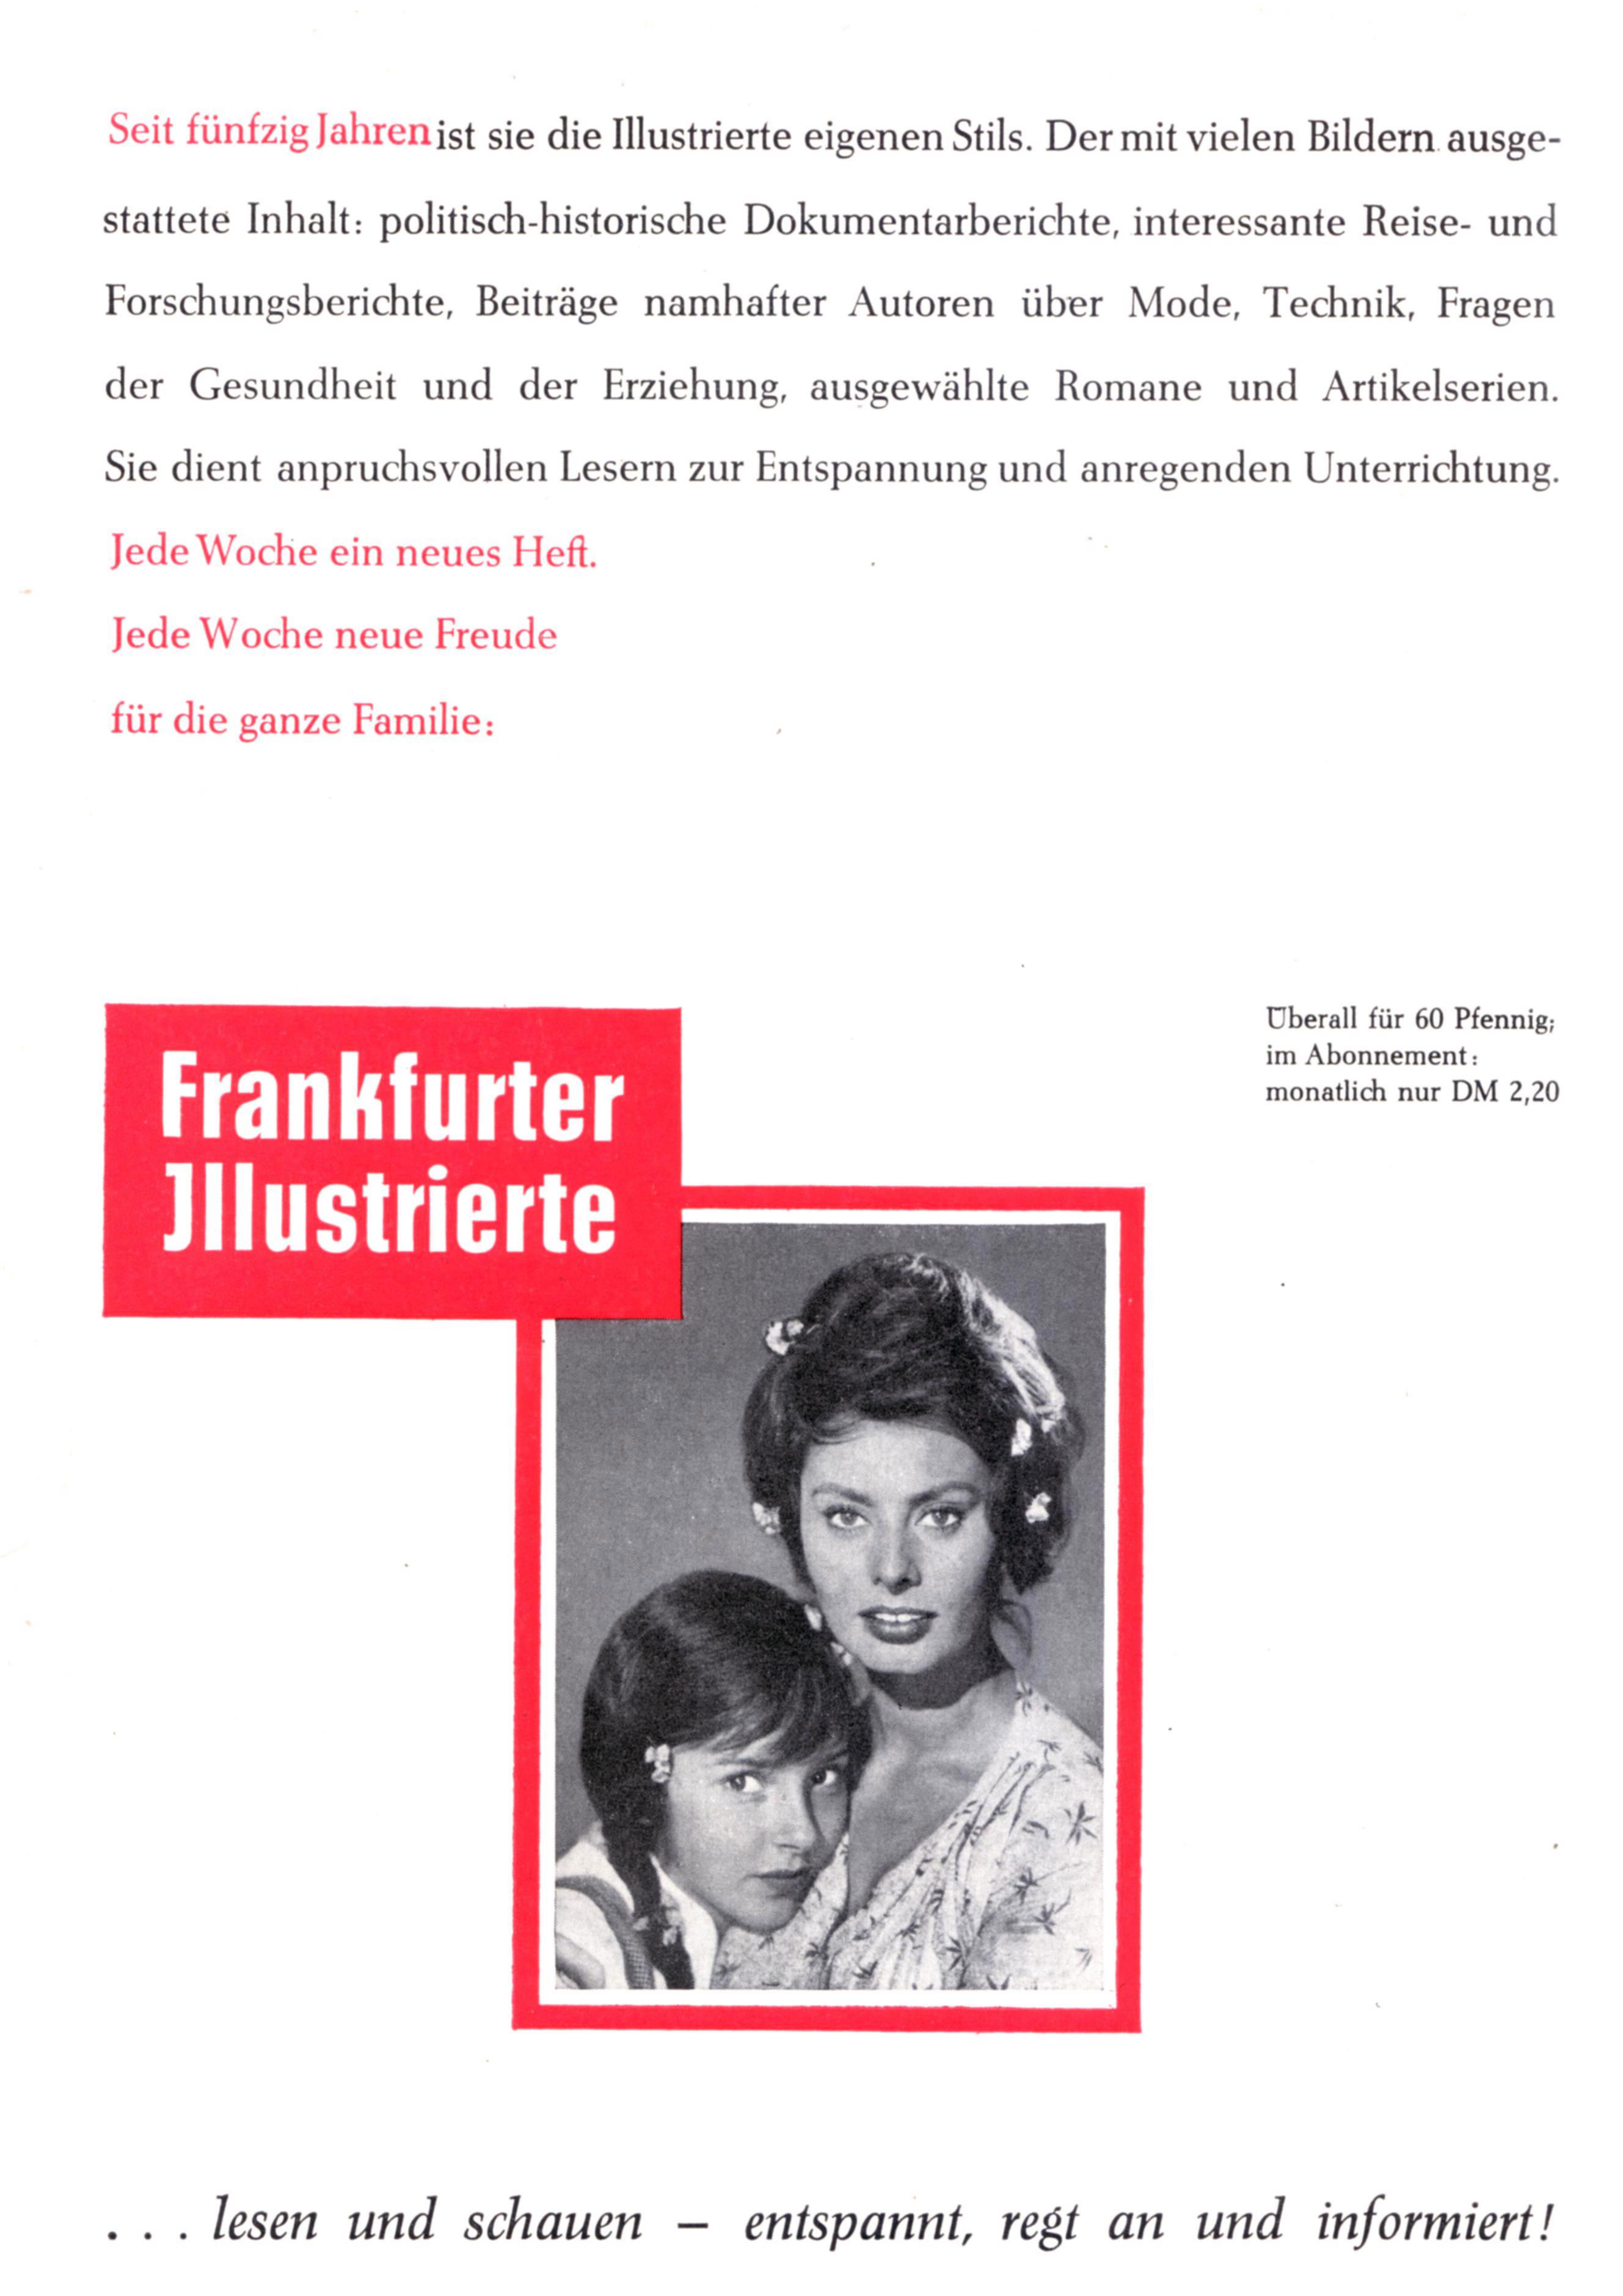 Frankfurter Illustrierte 1961.jpg